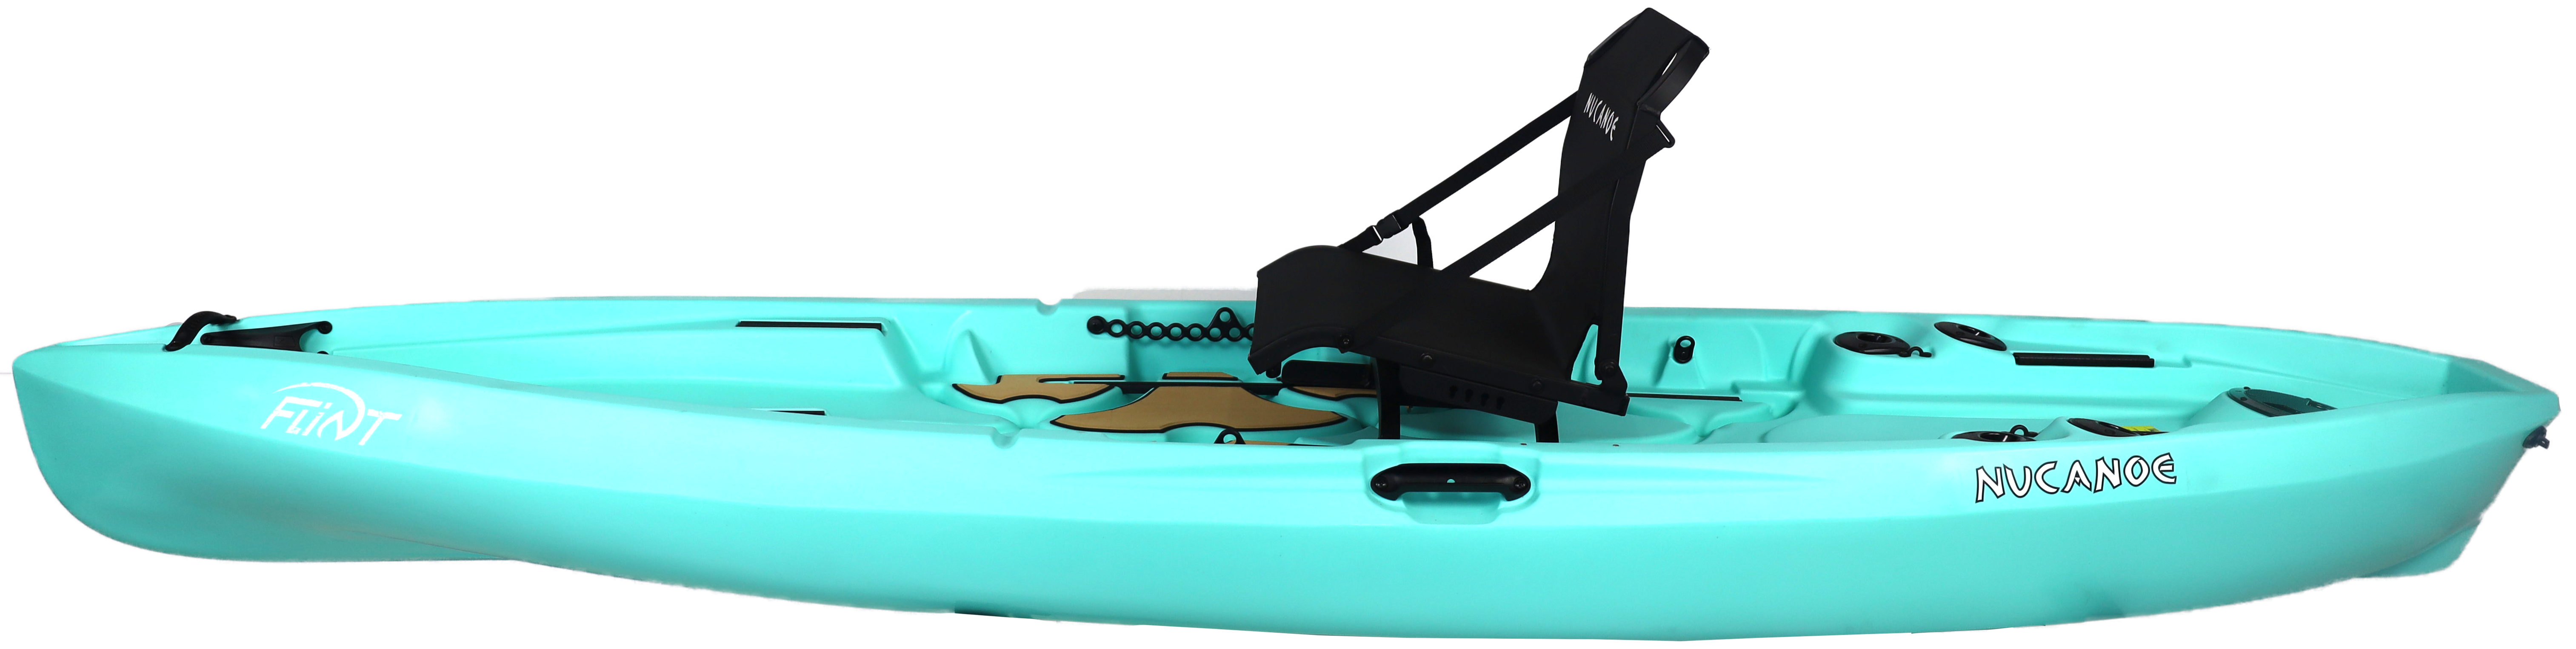 NuCanoe Flint Kayak